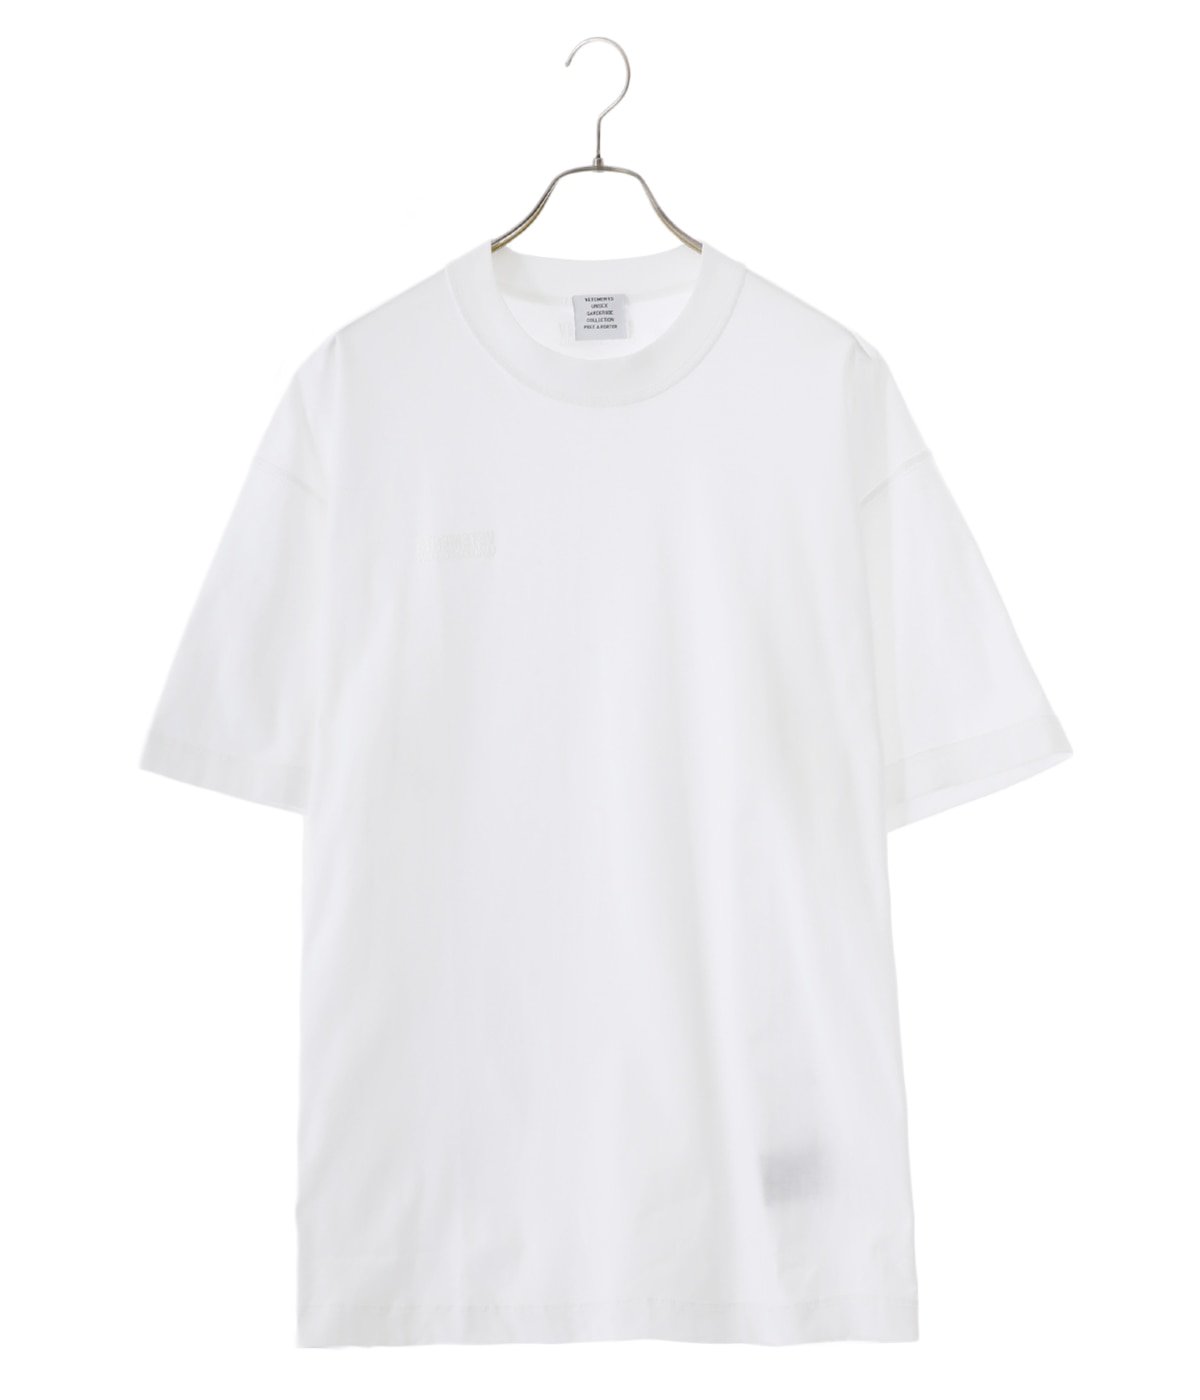 になりますVETEMENTS オールホワイト Tシャツ メンズ 半袖 UE63TR140W ...